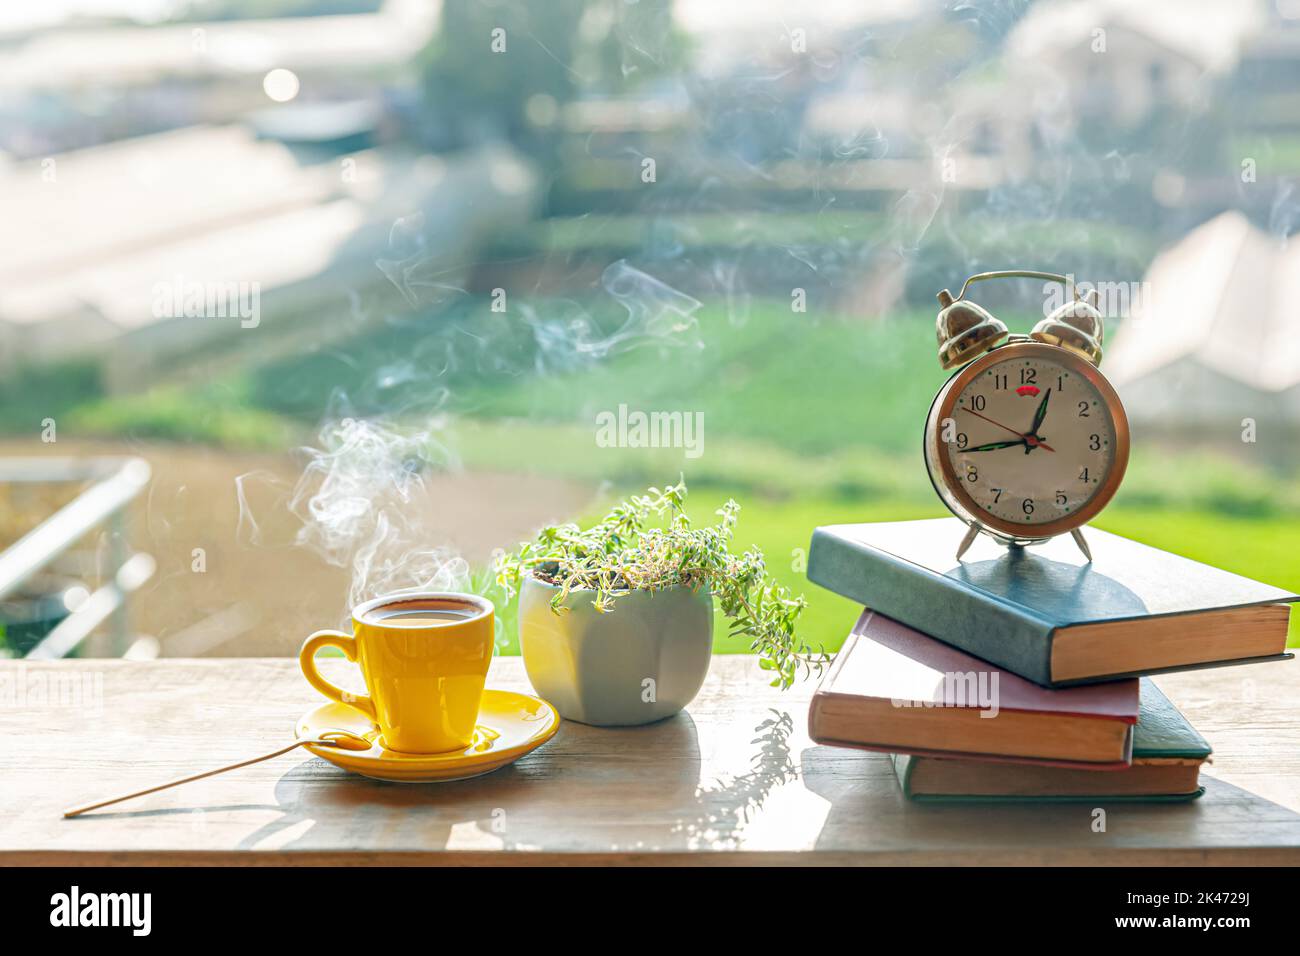 Una tazza di caffè caldo si trova accanto a una pianta in vaso, libri, sveglia su un tavolo di legno, al sole del pomeriggio Foto Stock